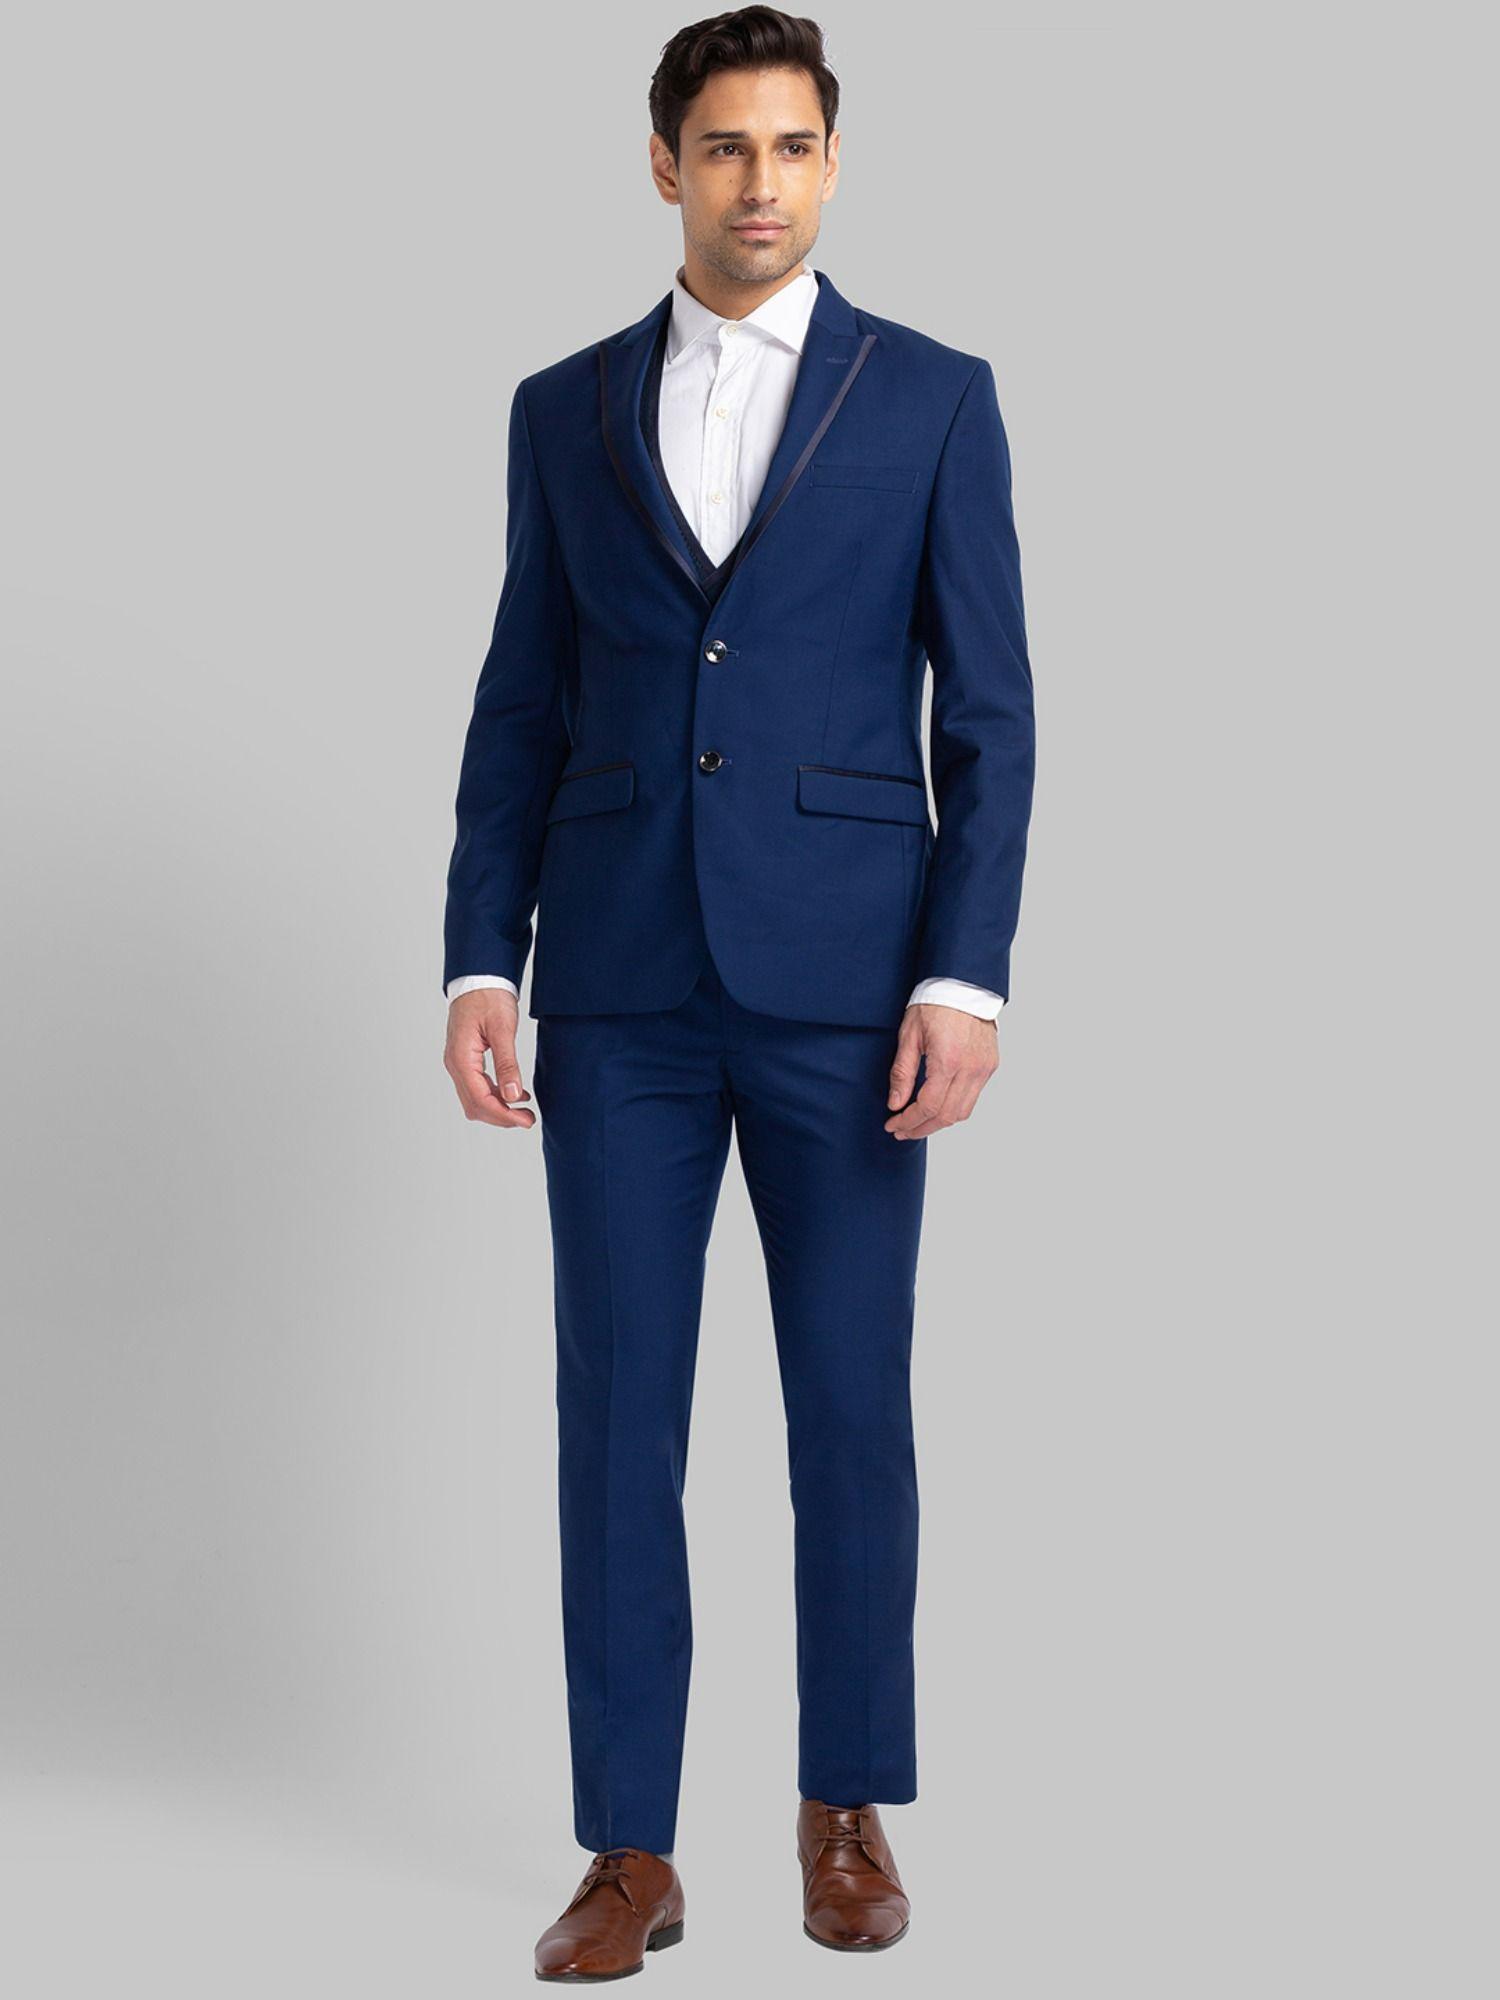 medium blue suit (set of 3)